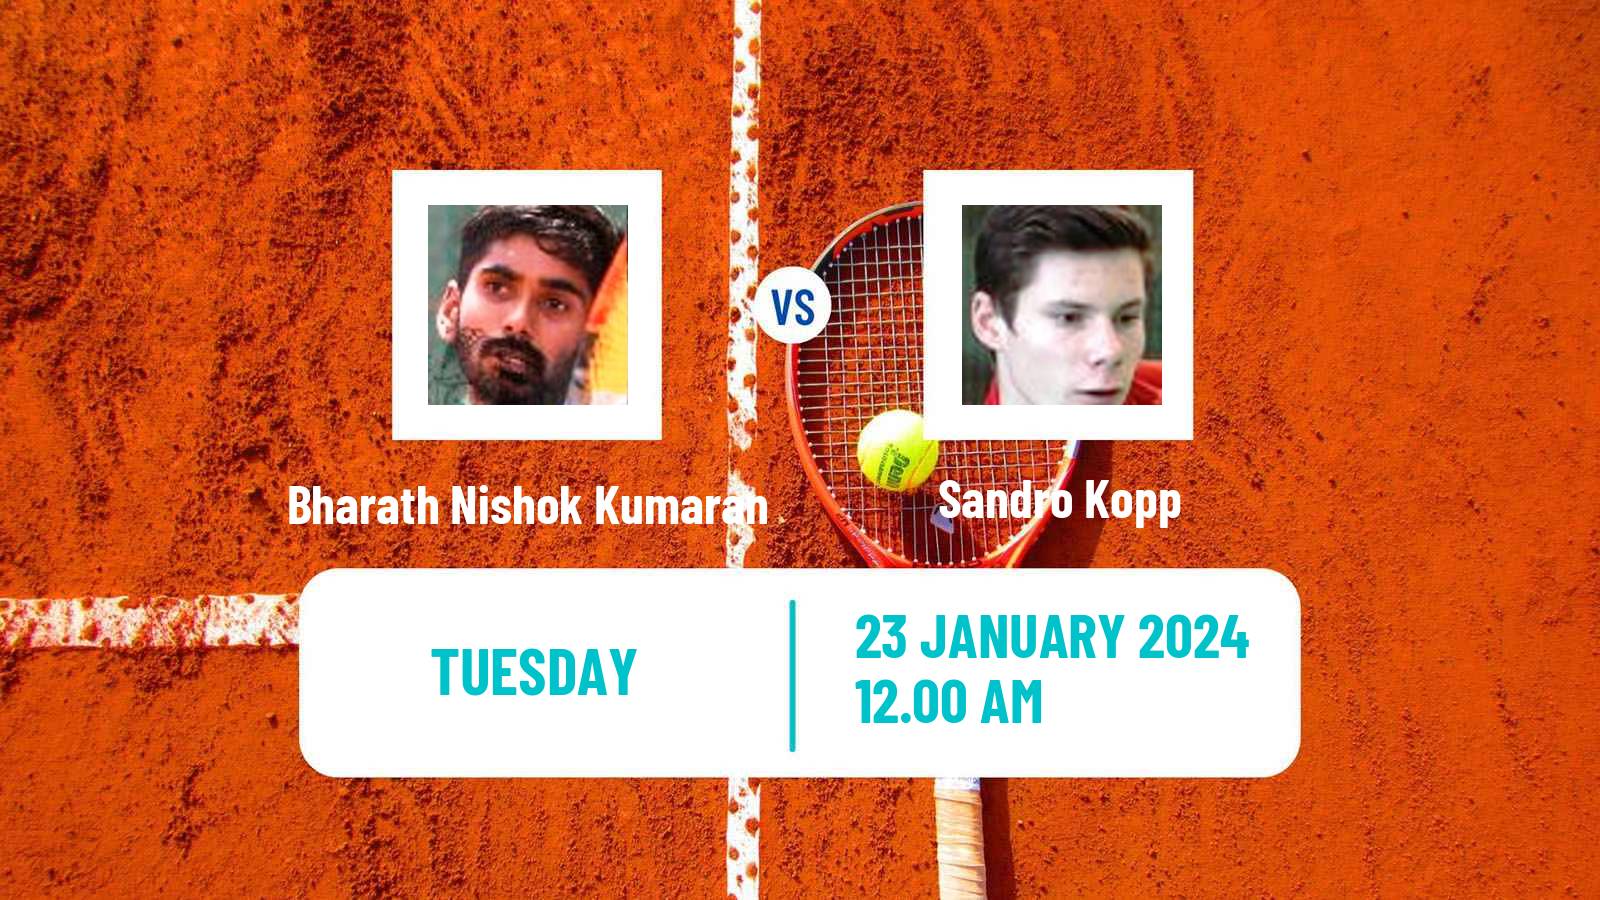 Tennis ITF M25 Chennai Men Bharath Nishok Kumaran - Sandro Kopp